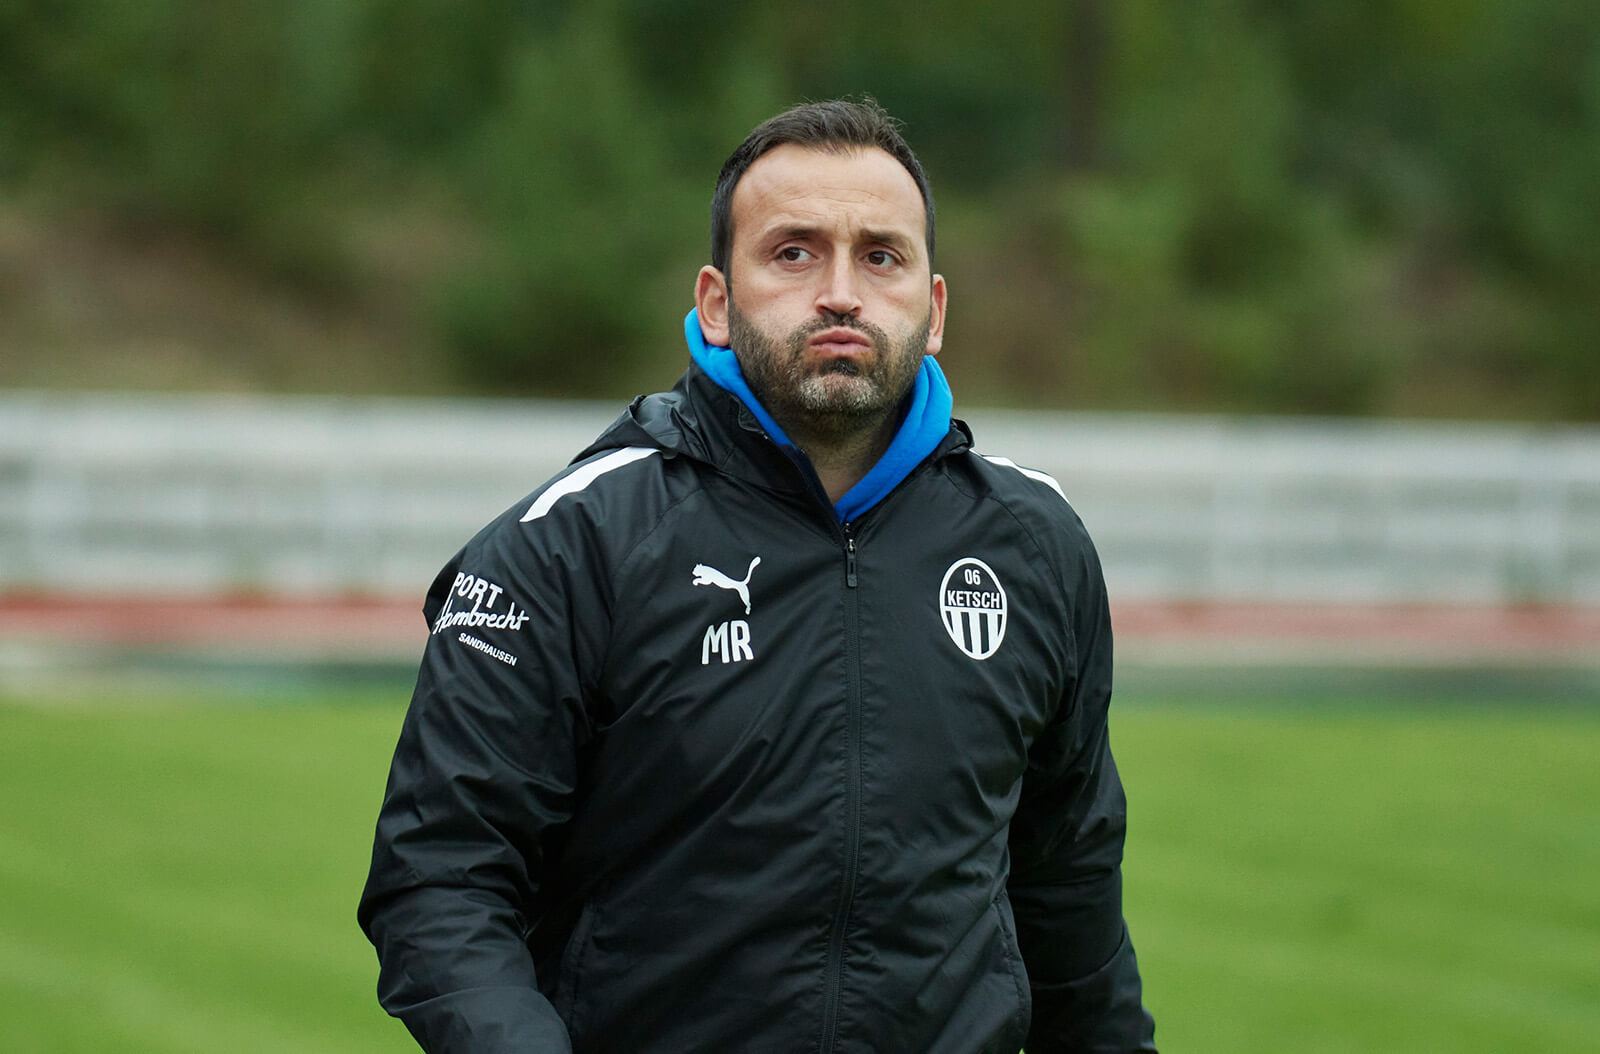  Marco Rocca sieht eine positive Entwicklung bei seiner Mannschaft. Bild: Berno Nix